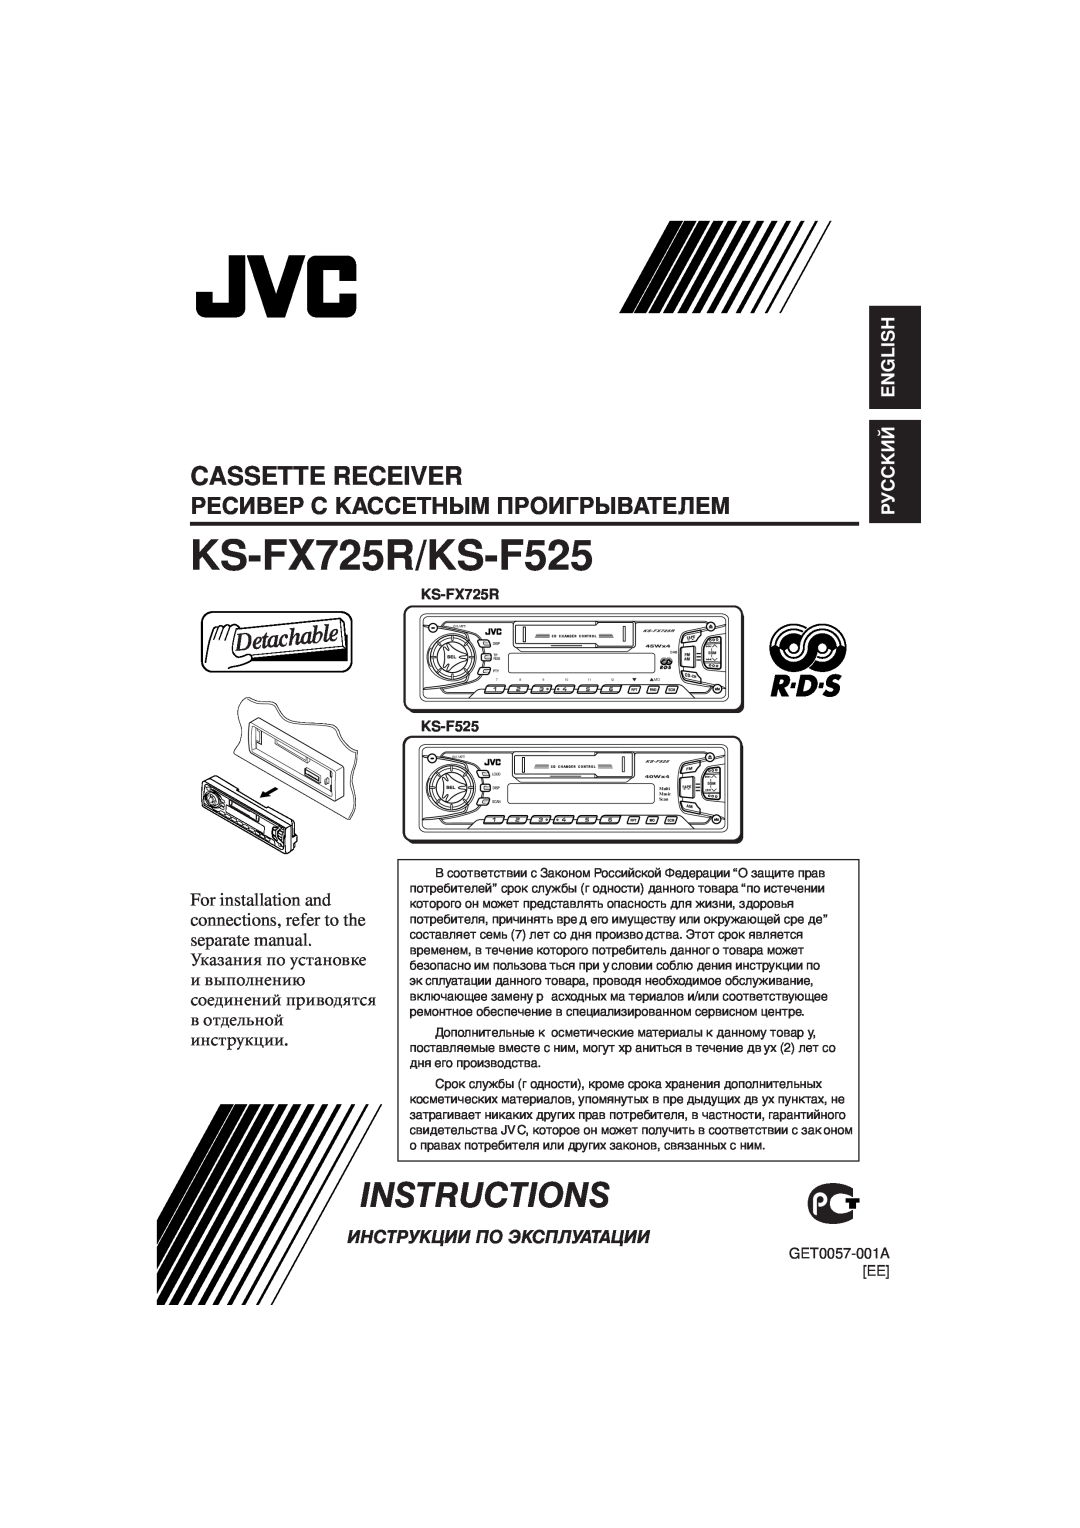 JVC manual Cassette Receiver, KS-FX725R/KS-F525, Instructions, Ресивер С Кассетным Проигрывателем, Русский English 